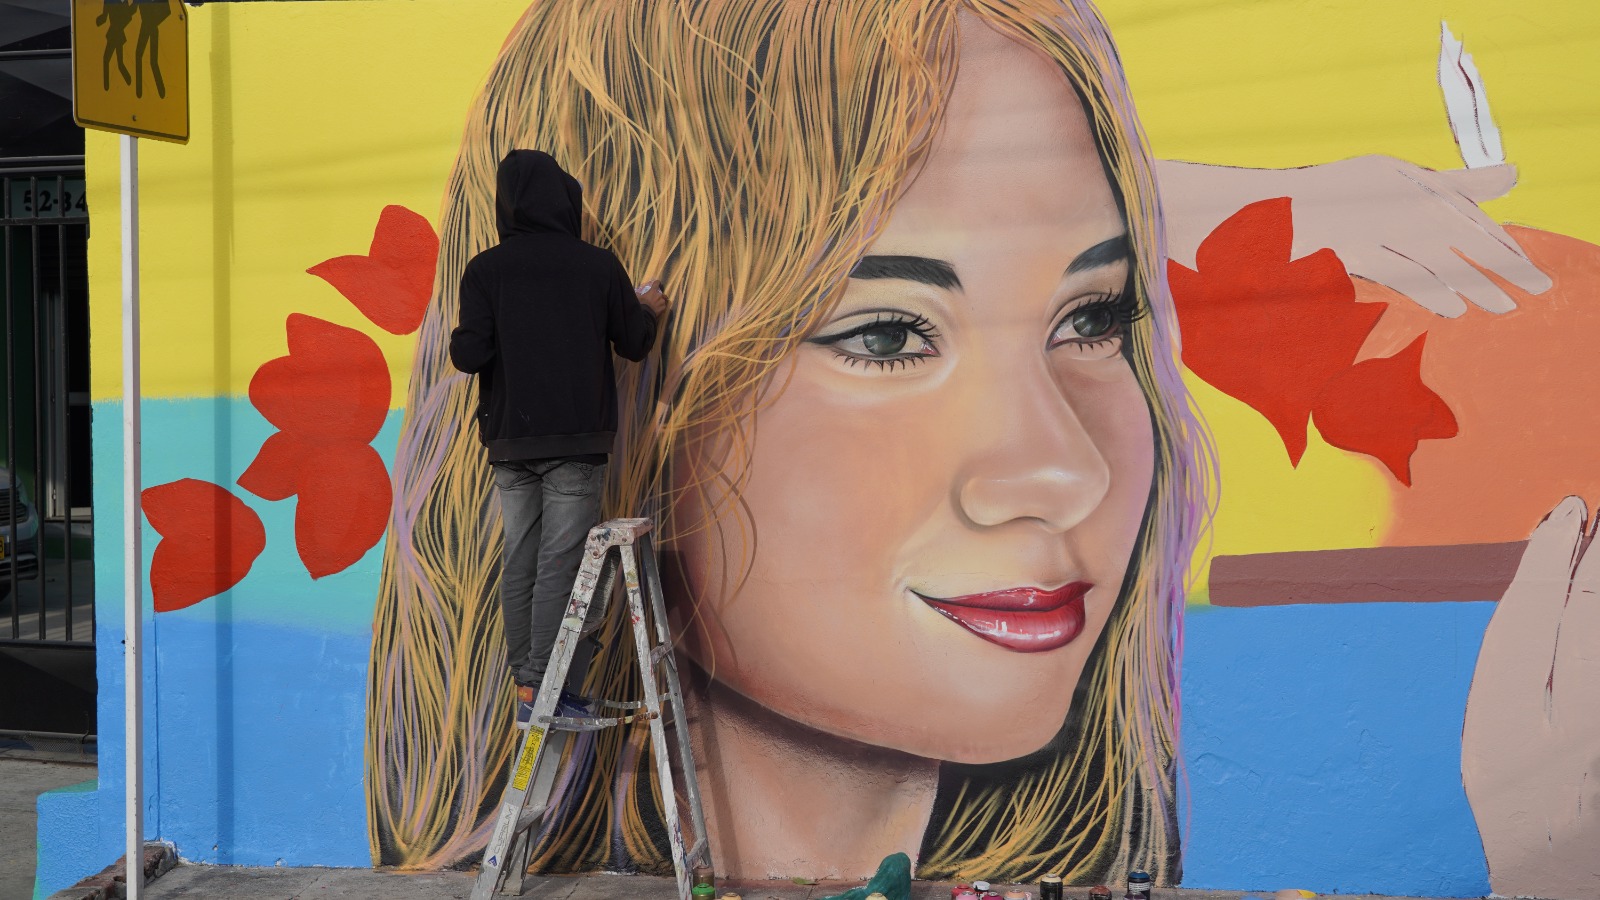 El rostro de una mujer en uno de los murales.